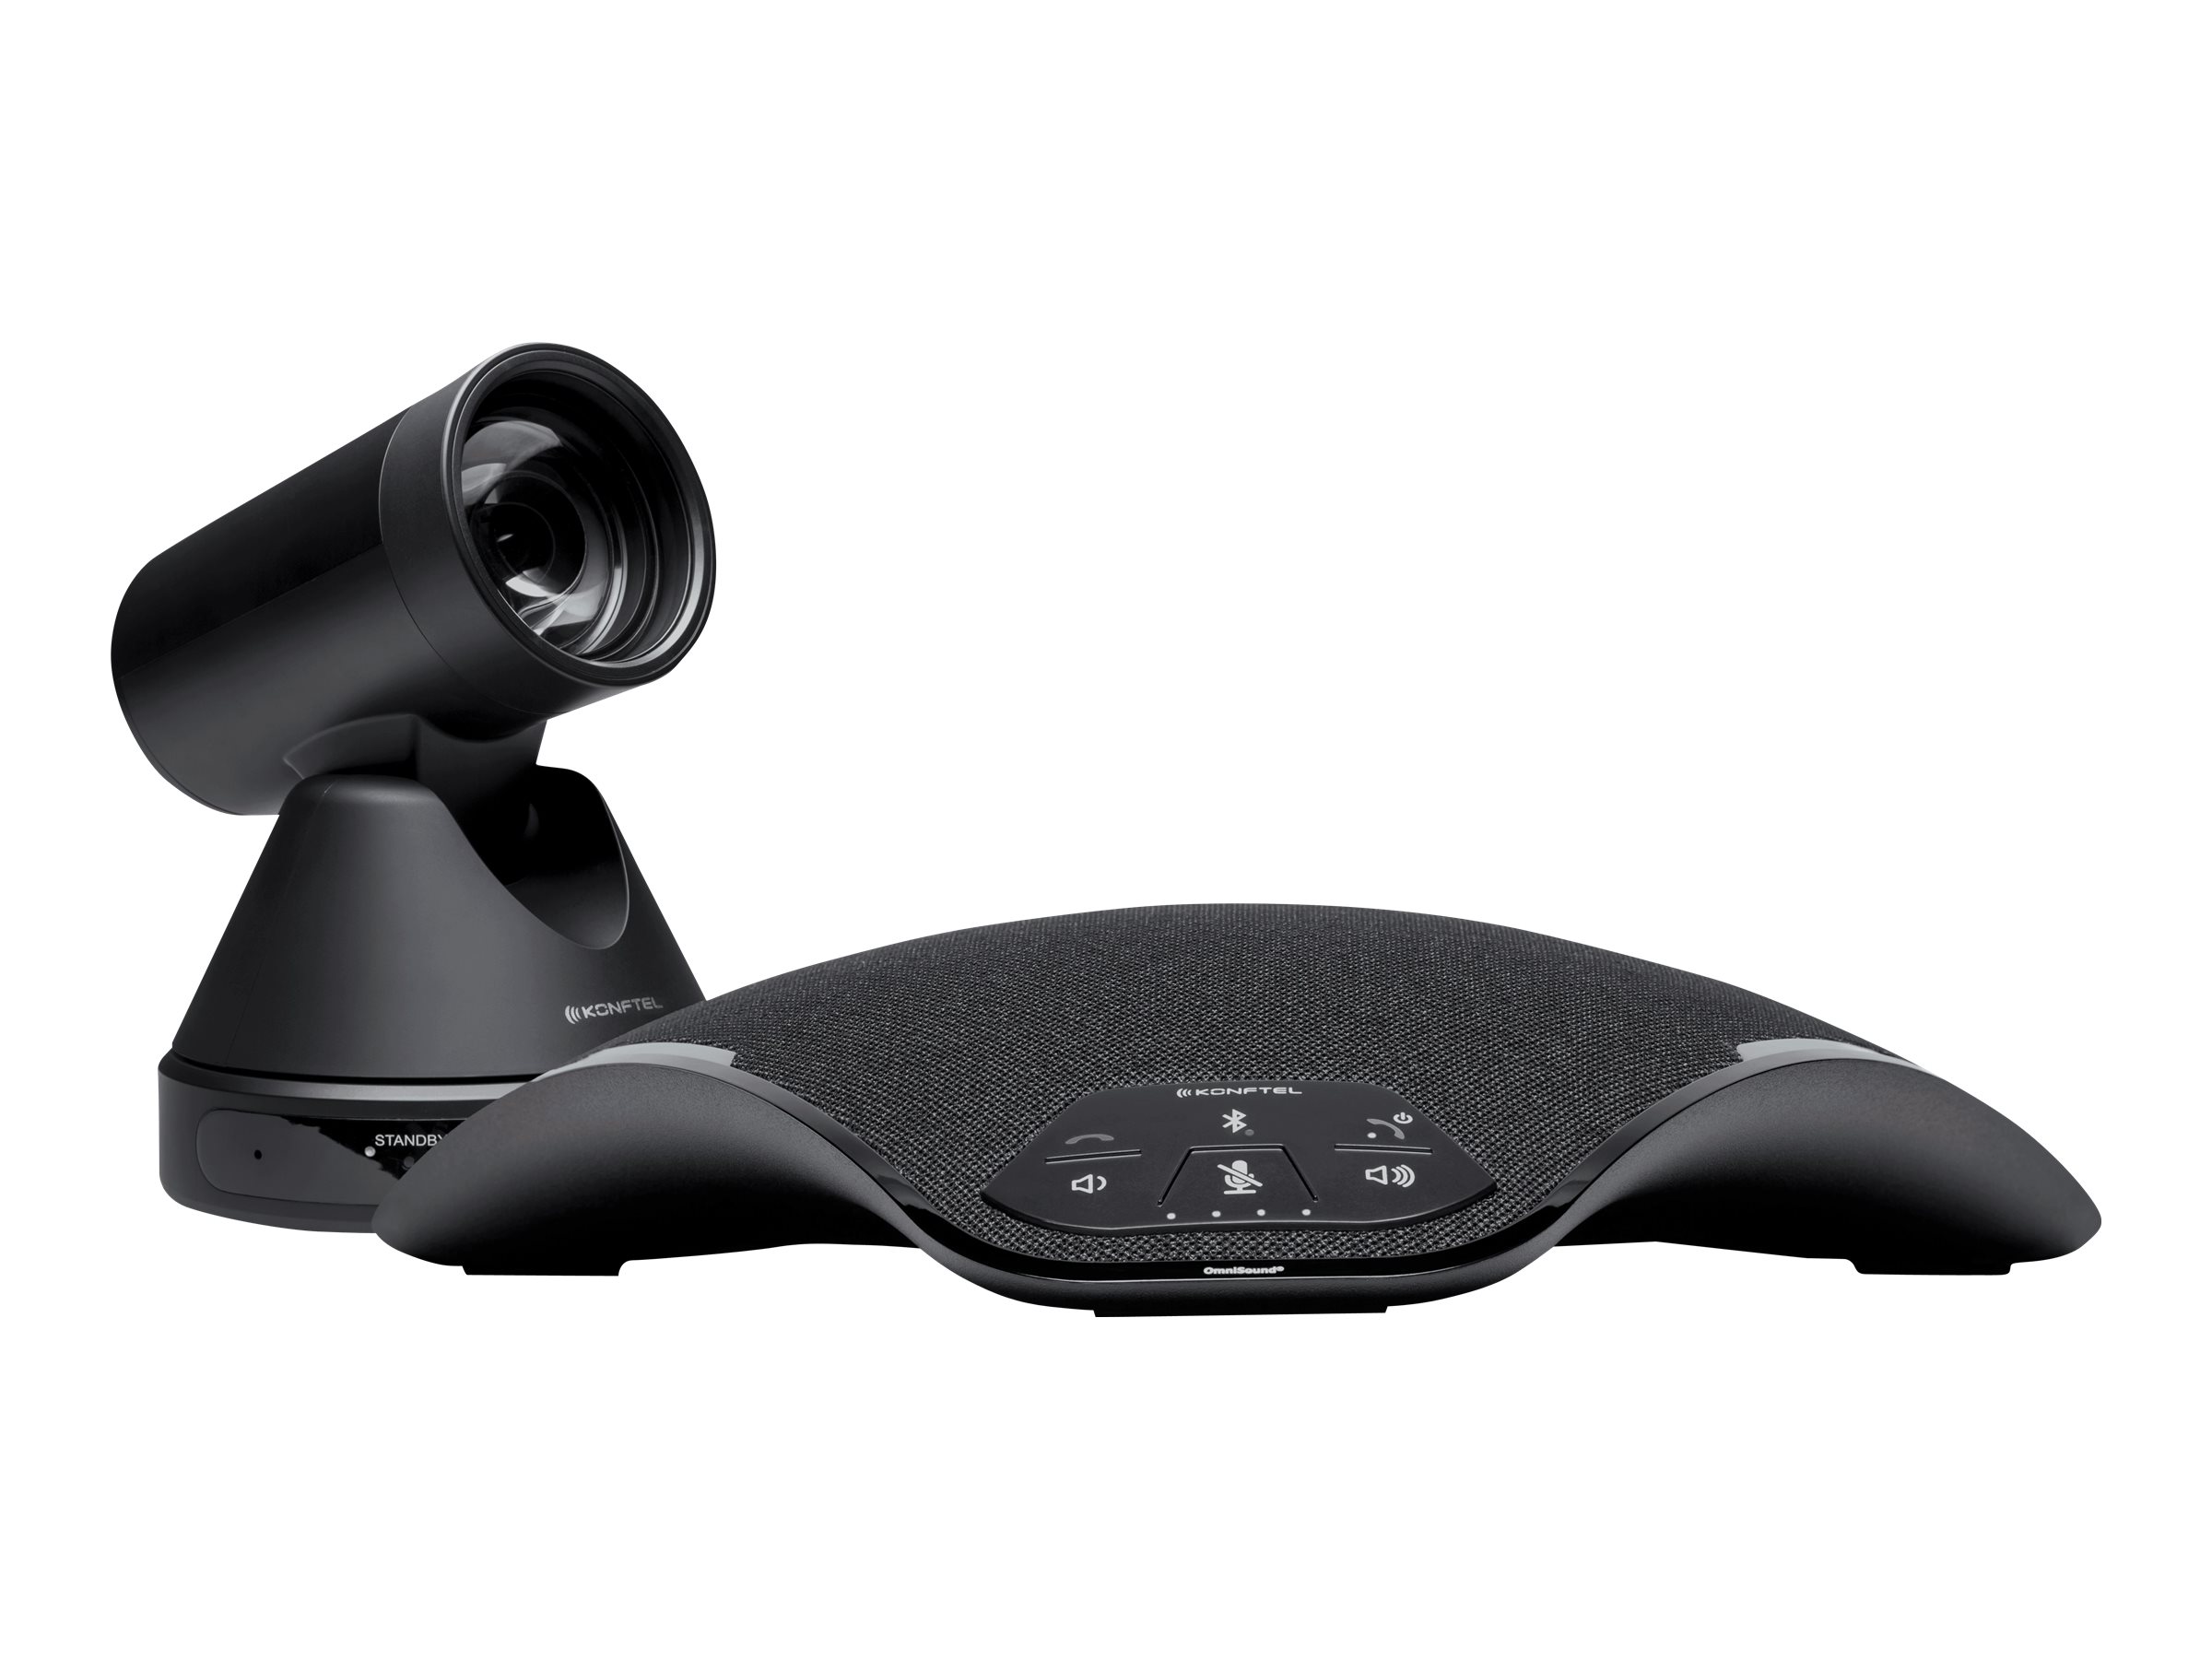 Konftel C5070 Attach - Kit für Videokonferenzen (Freisprechgerät, camera) - Schwarz, Charcoal Black